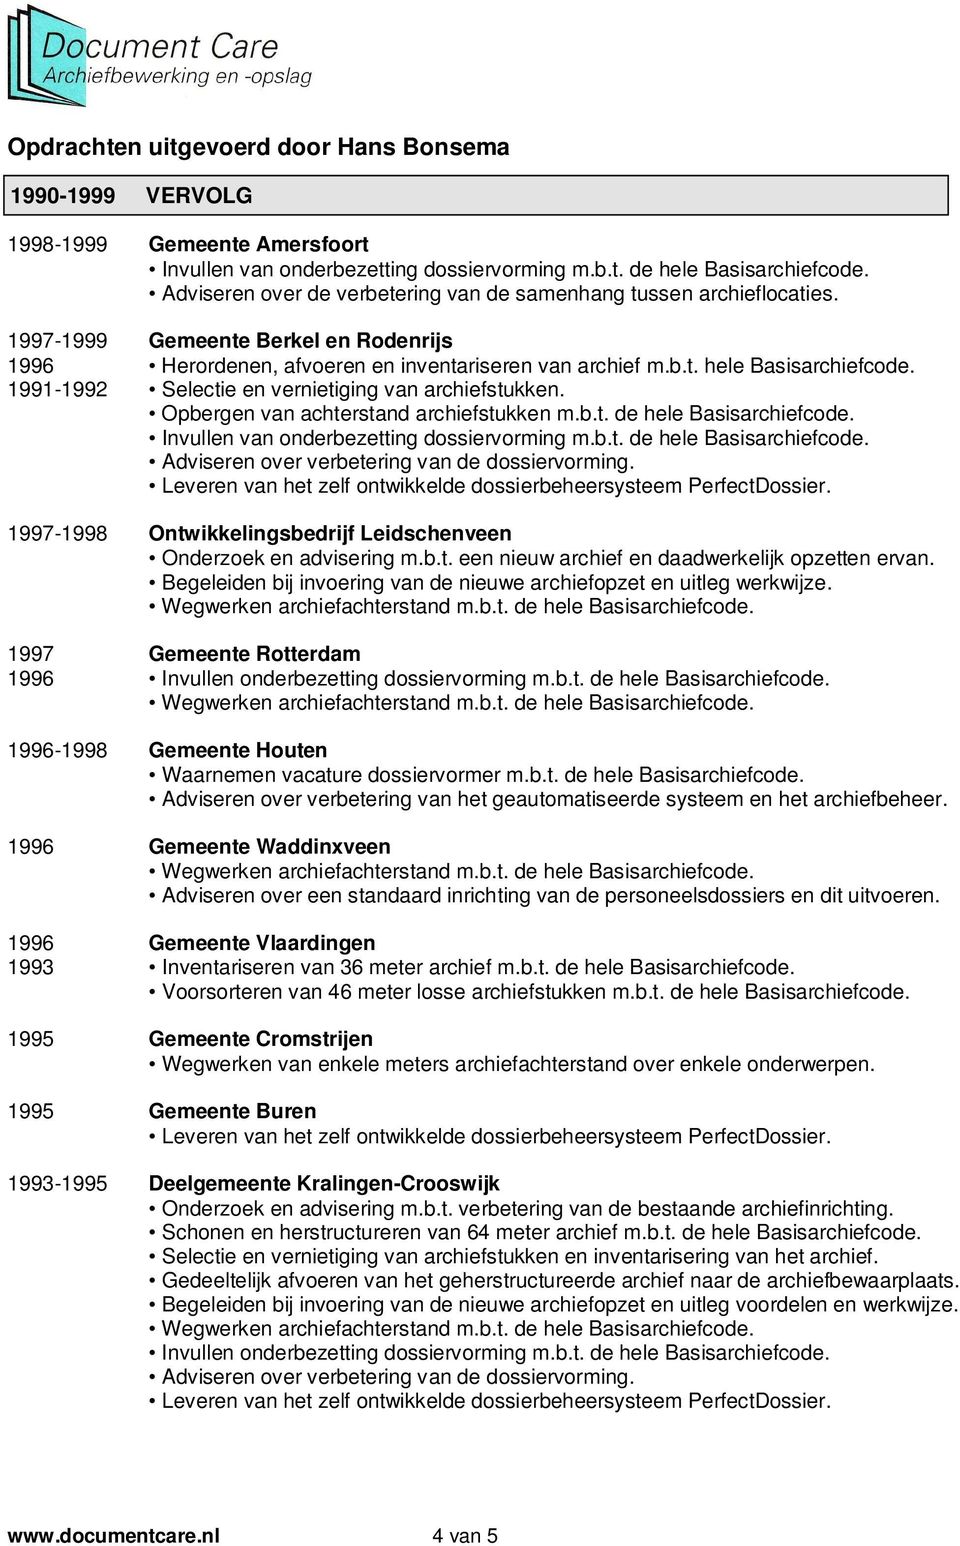 1997-1998 Ontwikkelingsbedrijf Leidschenveen Onderzoek en advisering m.b.t. een nieuw archief en daadwerkelijk opzetten ervan. Begeleiden bij invoering van de nieuwe archiefopzet en uitleg werkwijze.